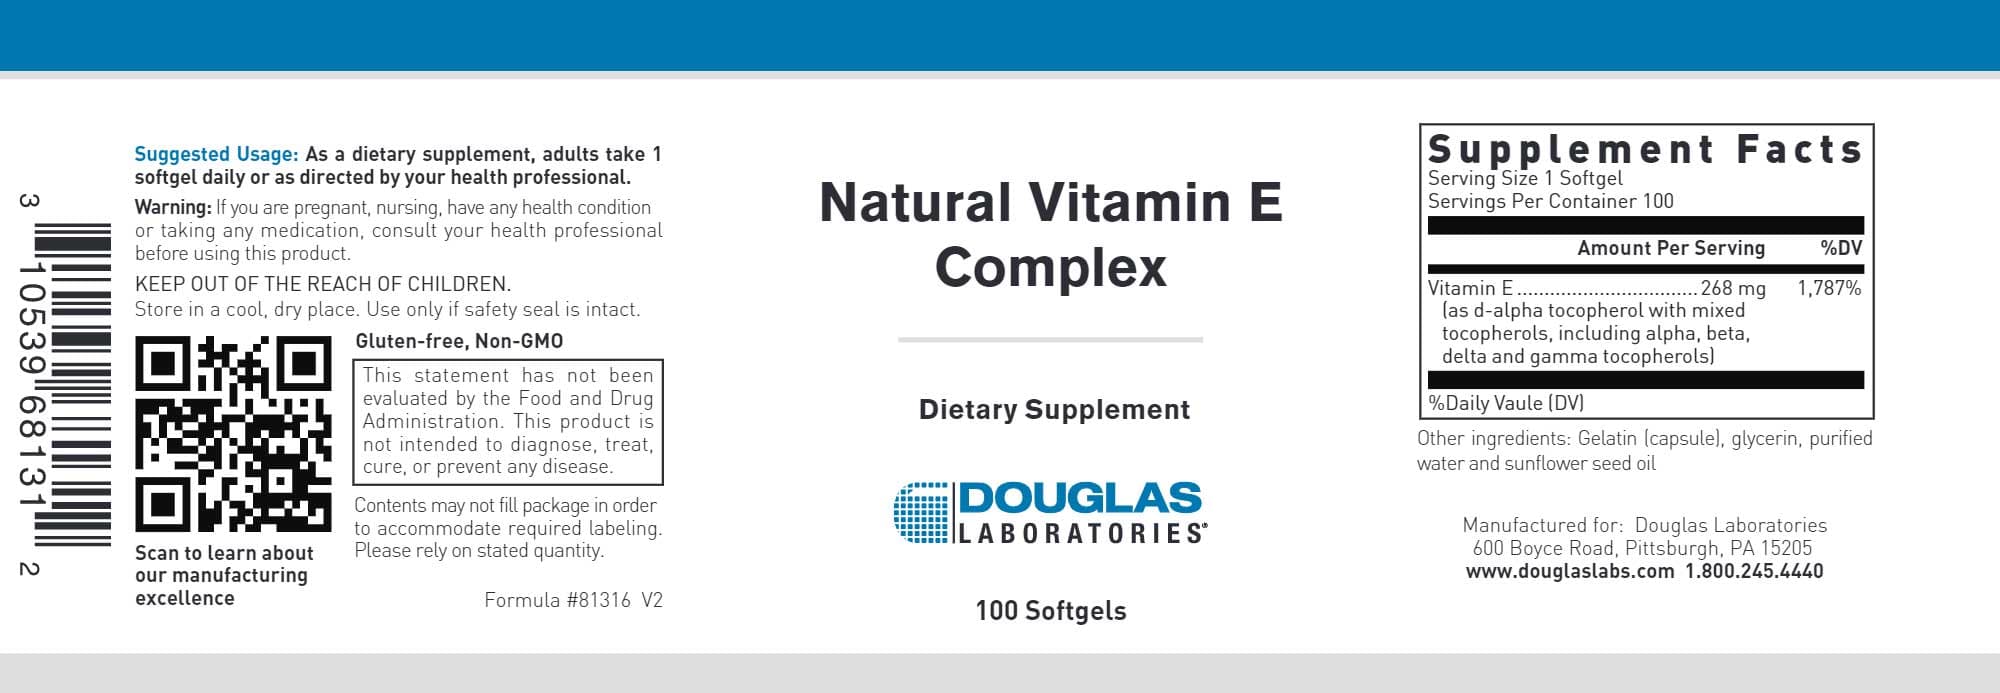 Douglas Laboratories Natural Vitamin E Complex Label